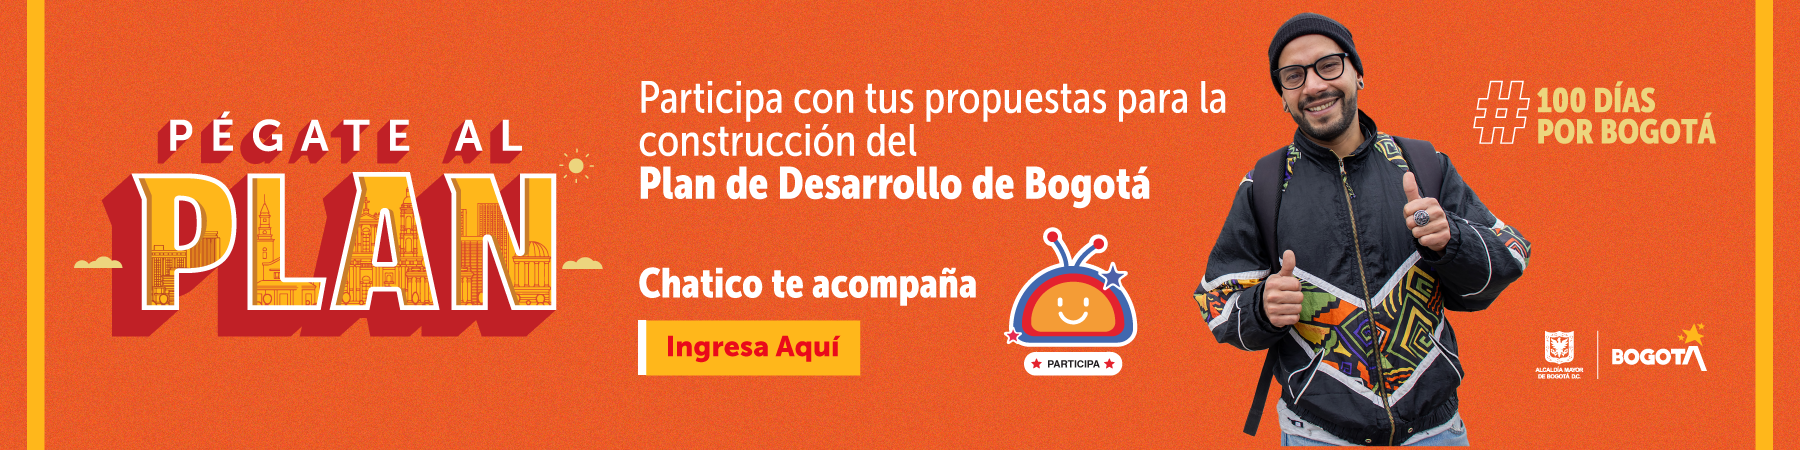 Pégate al plan. Participa con tus propuestas para la construcción del Plan de Desarrollo de Bogotá. Chatico de acompaña. Ingresa aquí